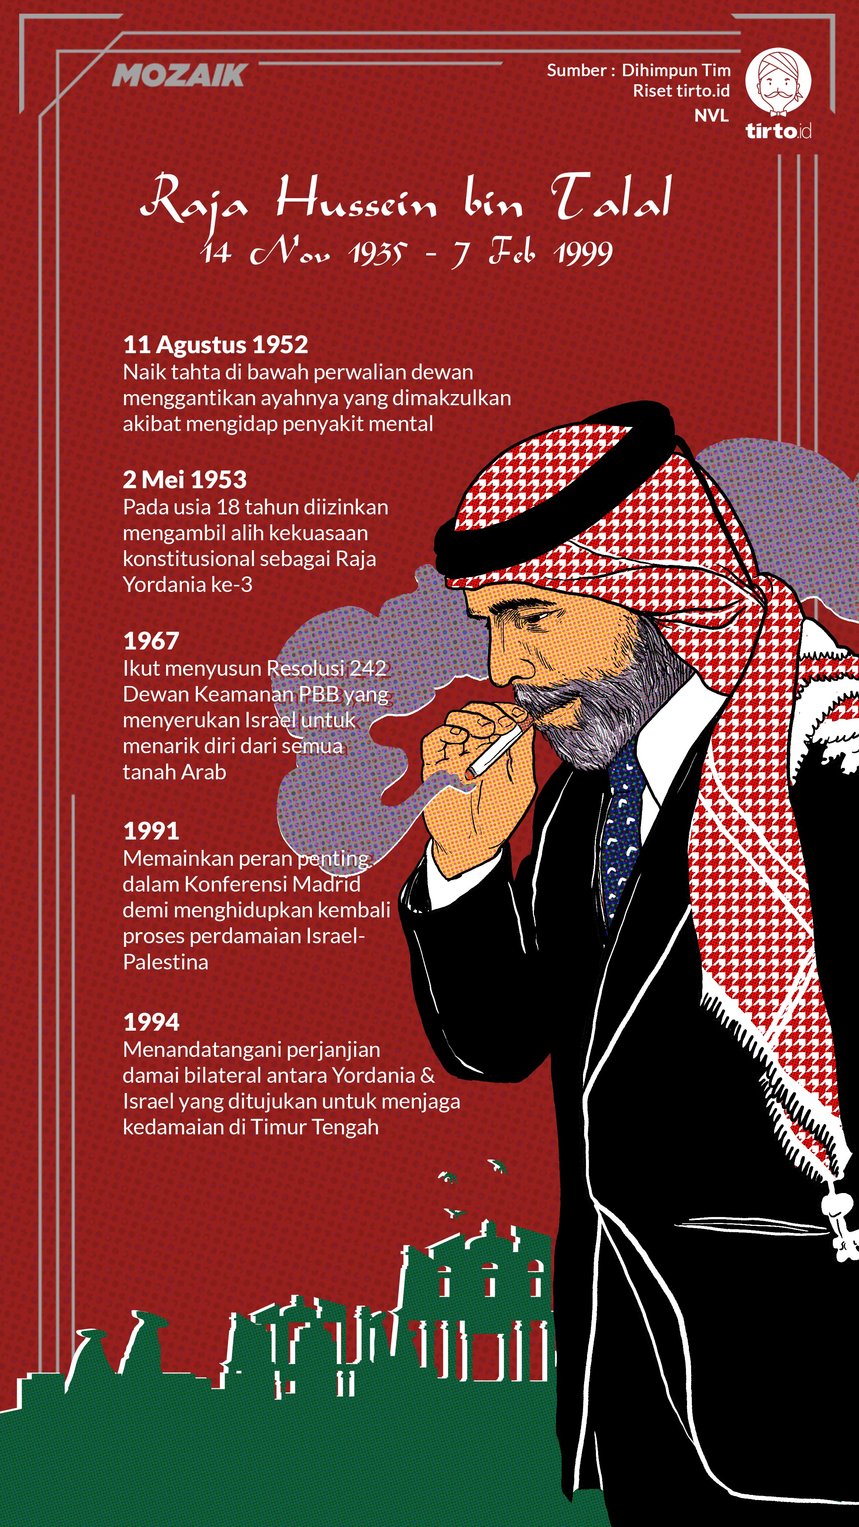 Infografik Mozaik Raja Hussein bin Talal